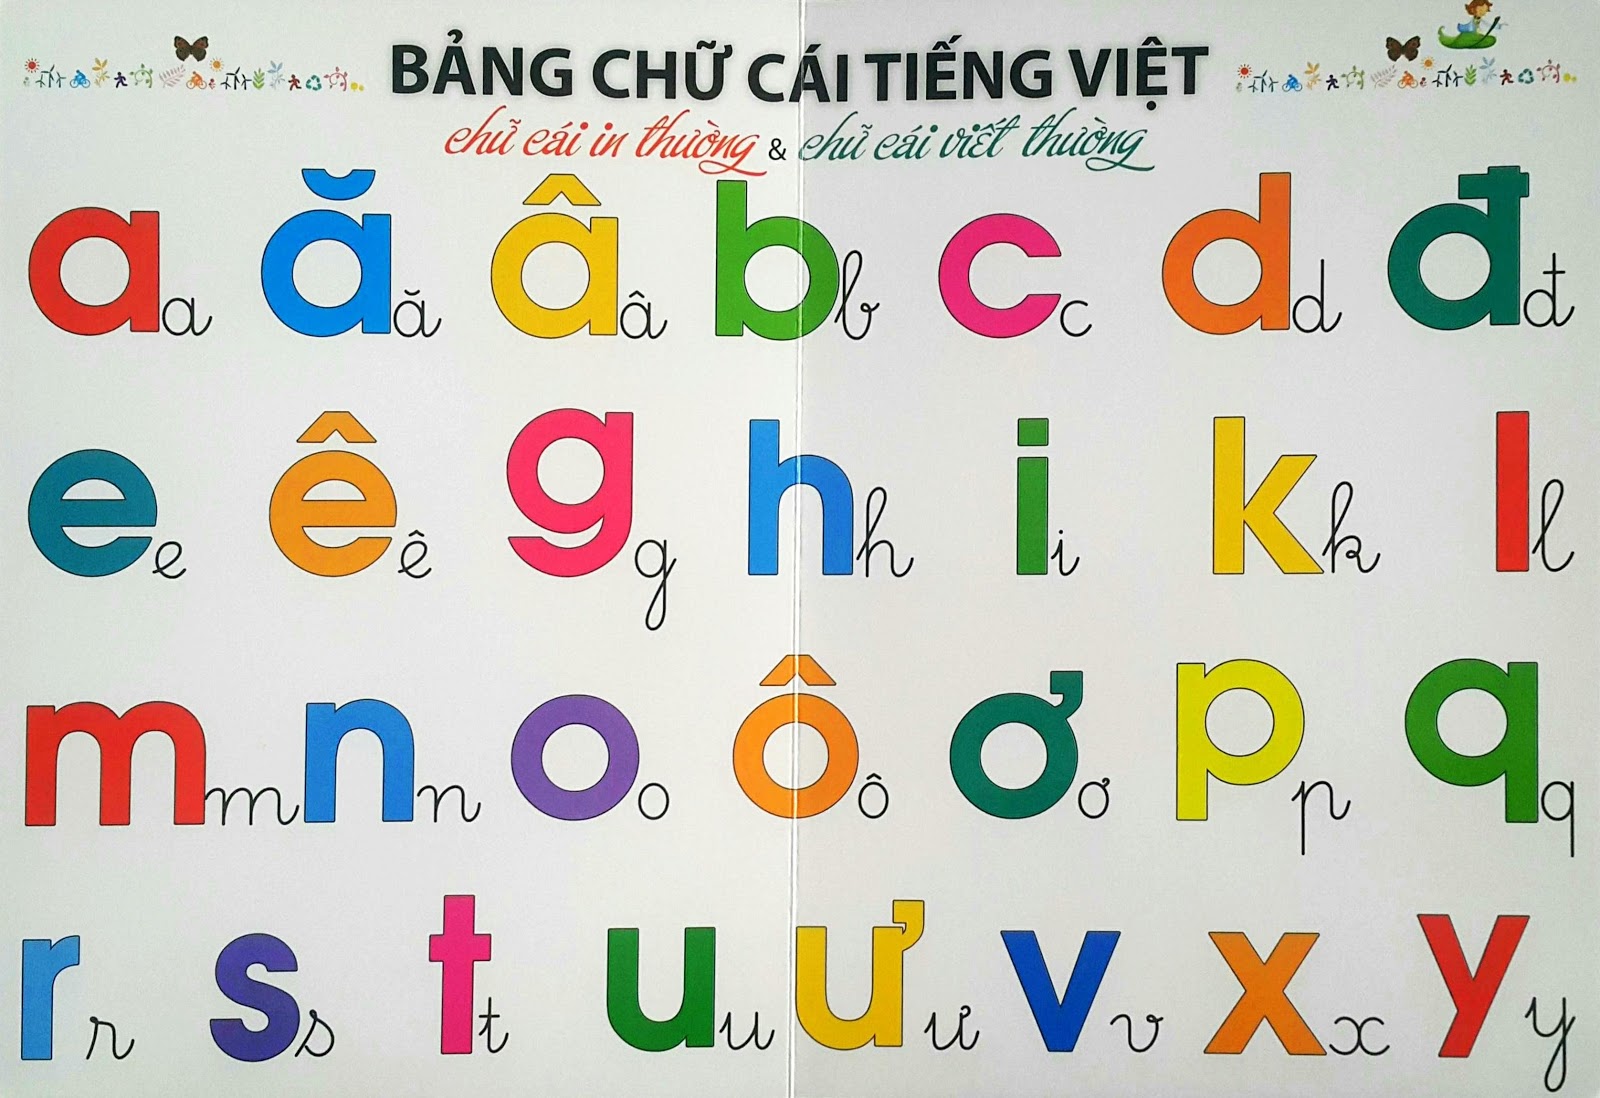 Bảng chữ cái Tiếng Việt chuẩn 2020 - Luyện phát âm